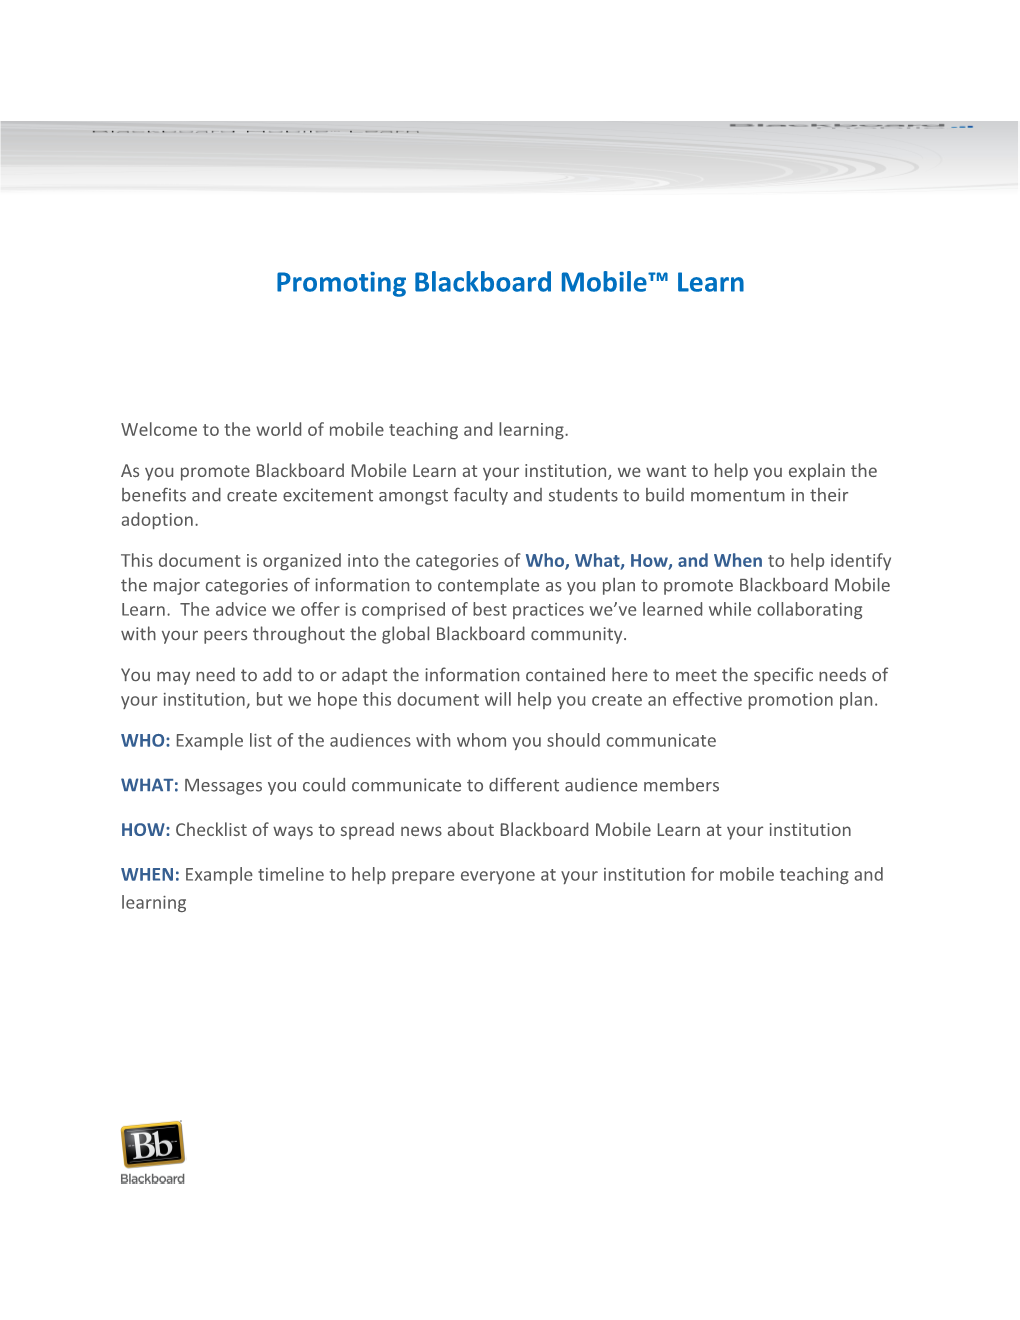 Promoting Blackboard Mobile Learn